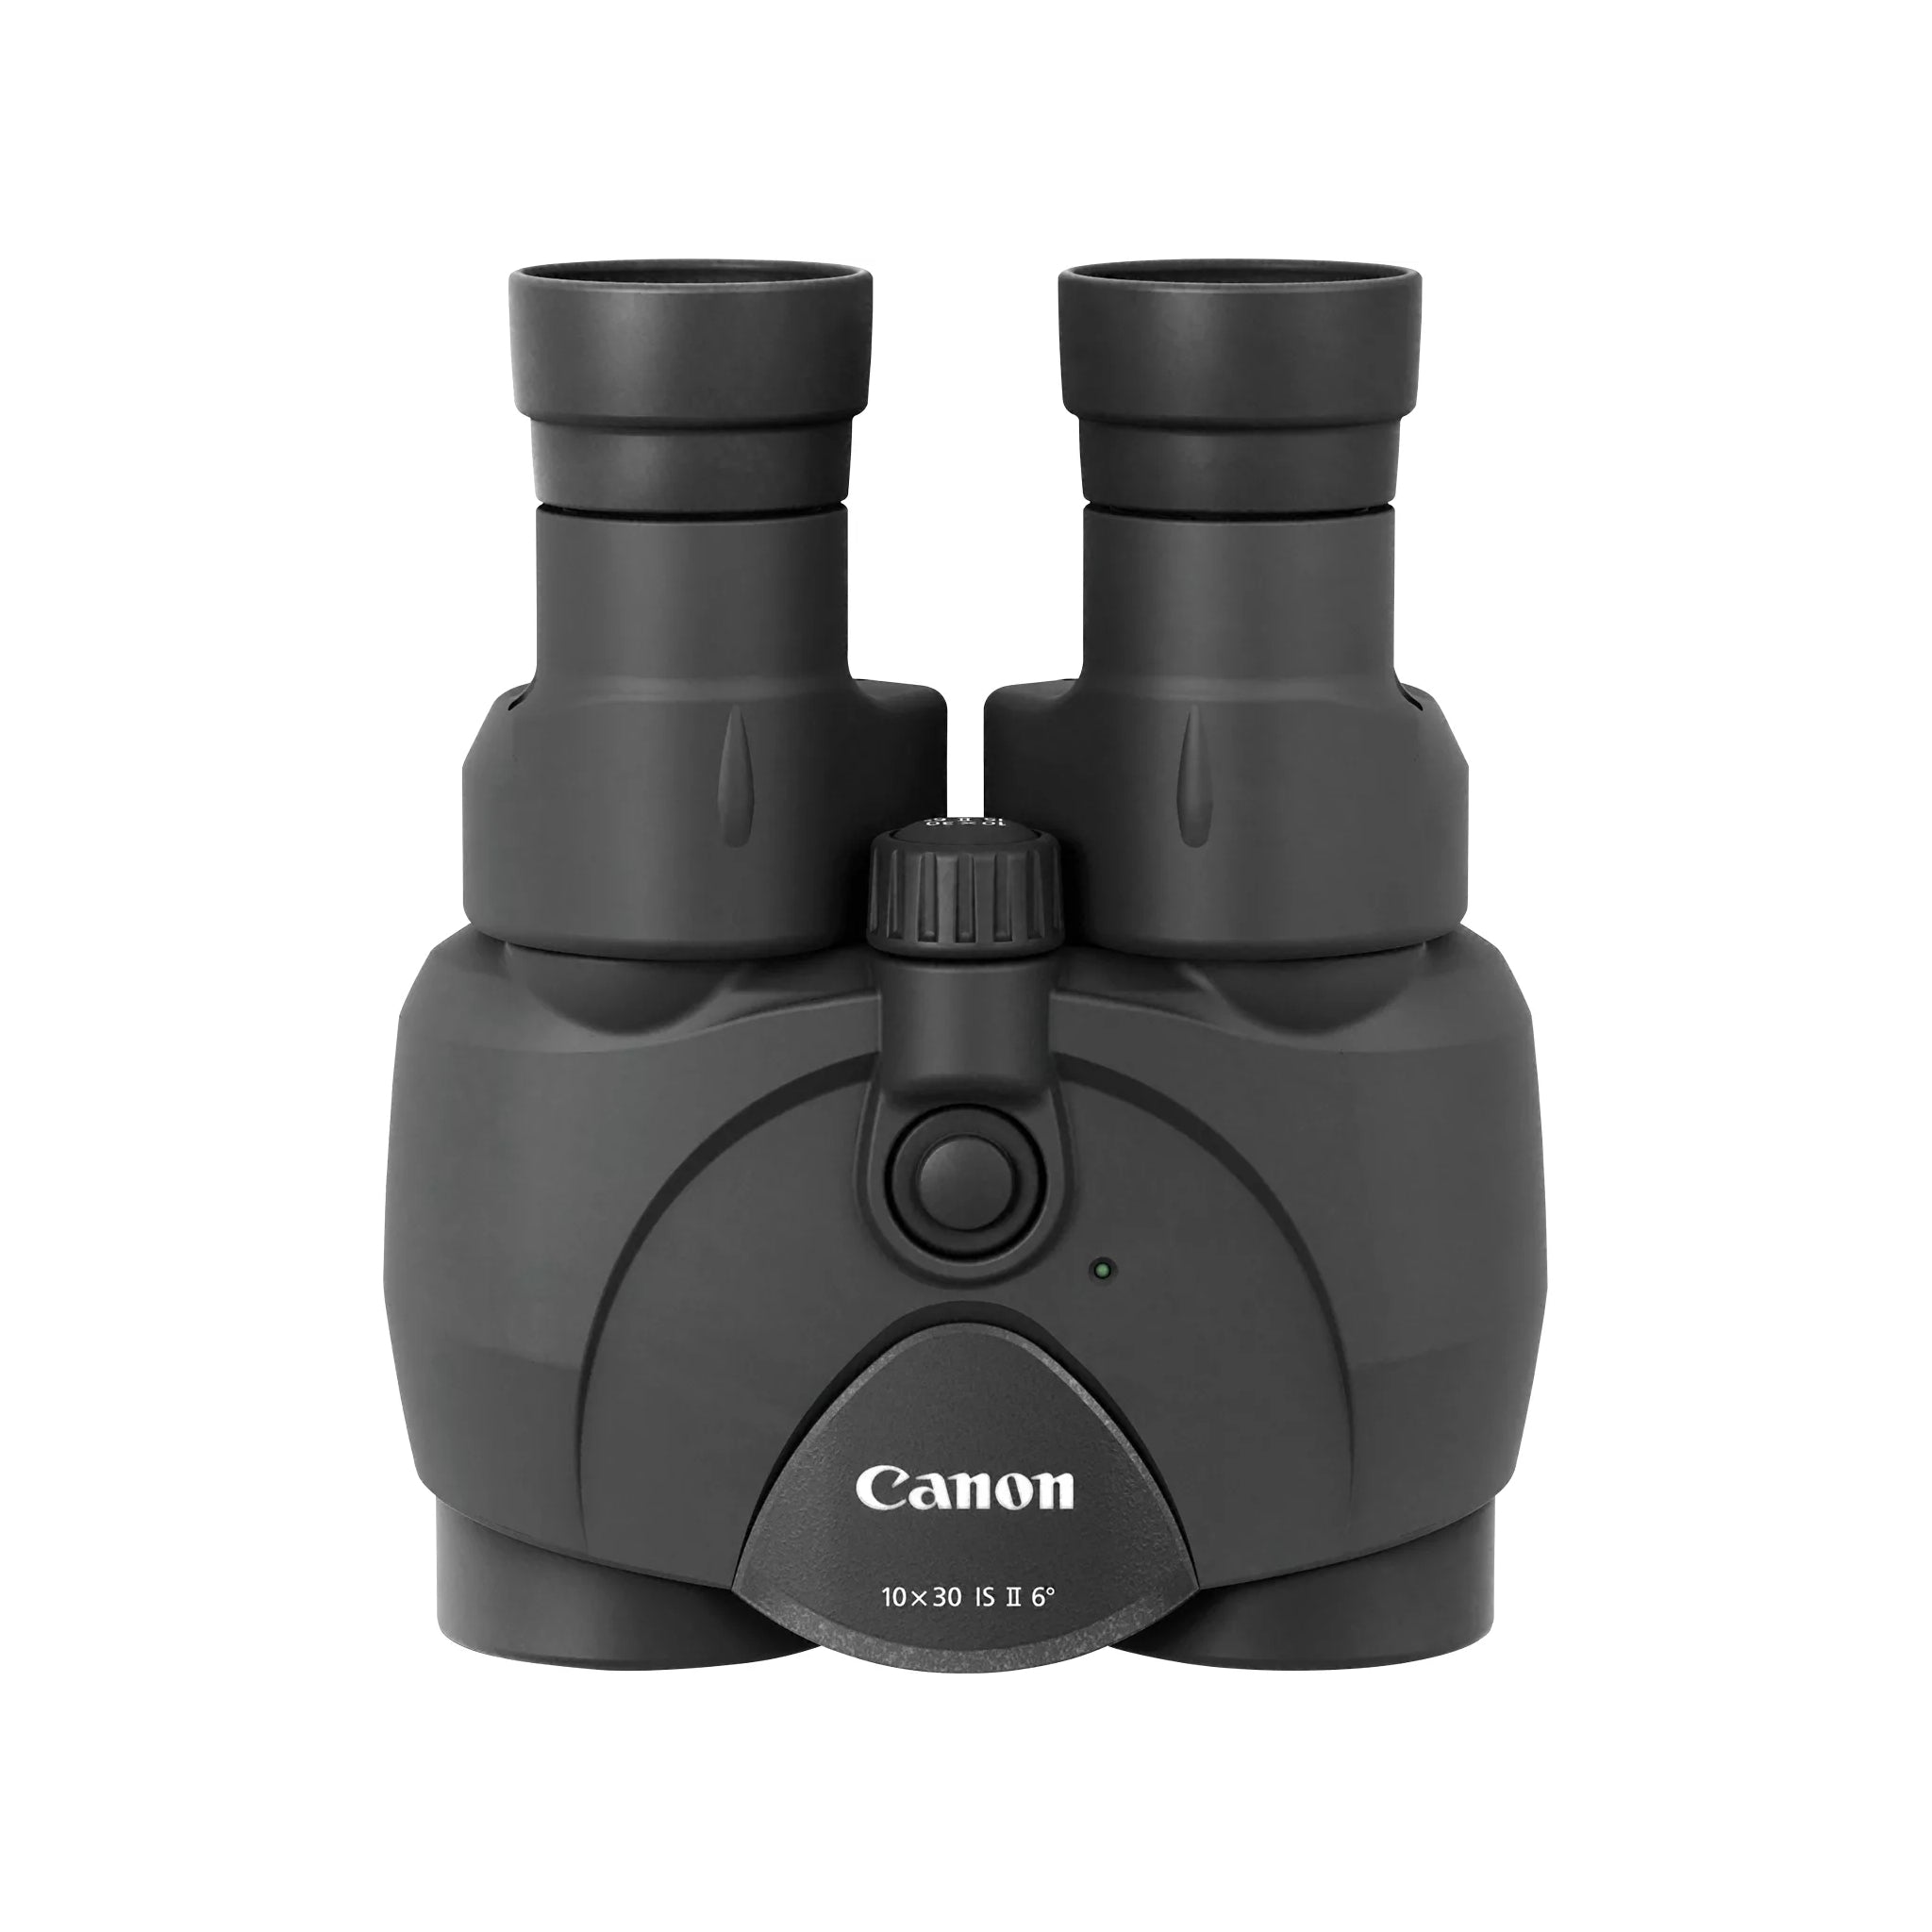 Canon 10 x 30 IS ii Image Stabilisation Binoculars (Black)